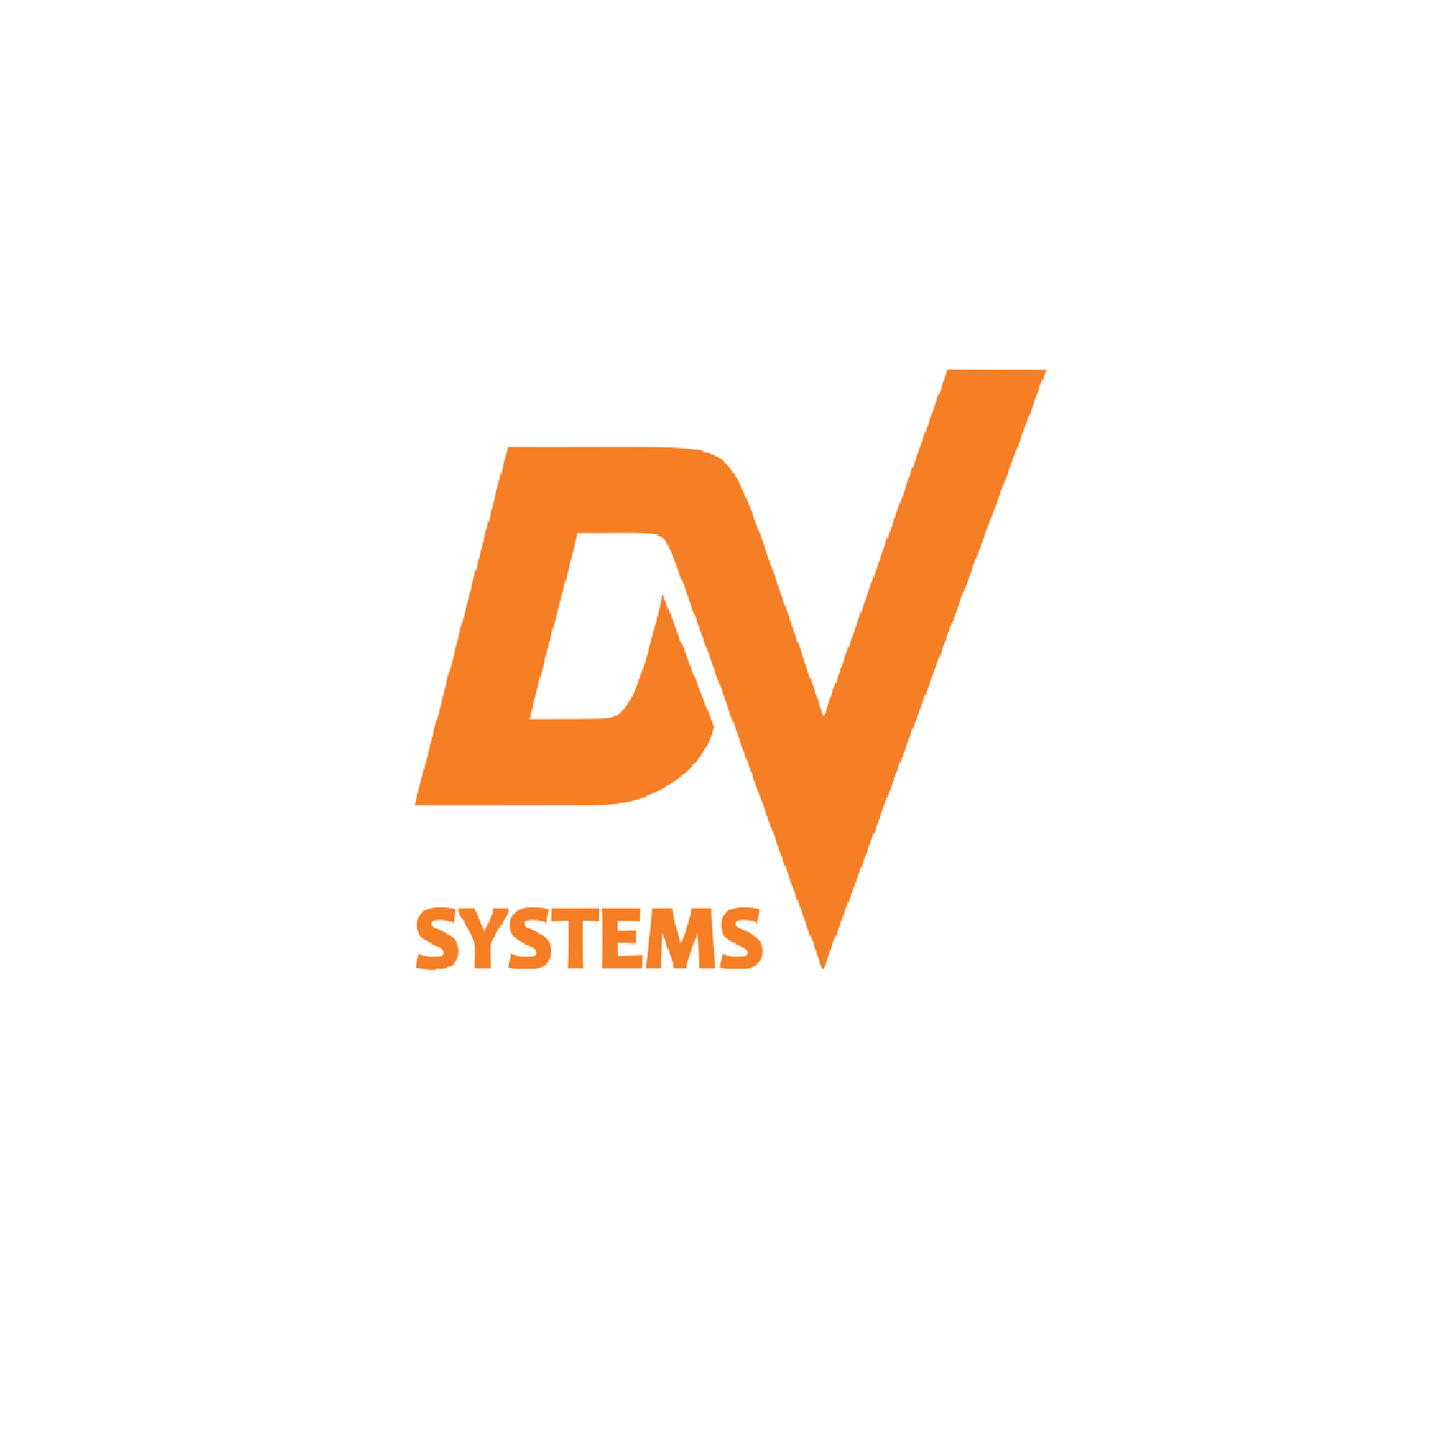 Dsc-002707 inverter 15hp 460v dv systems